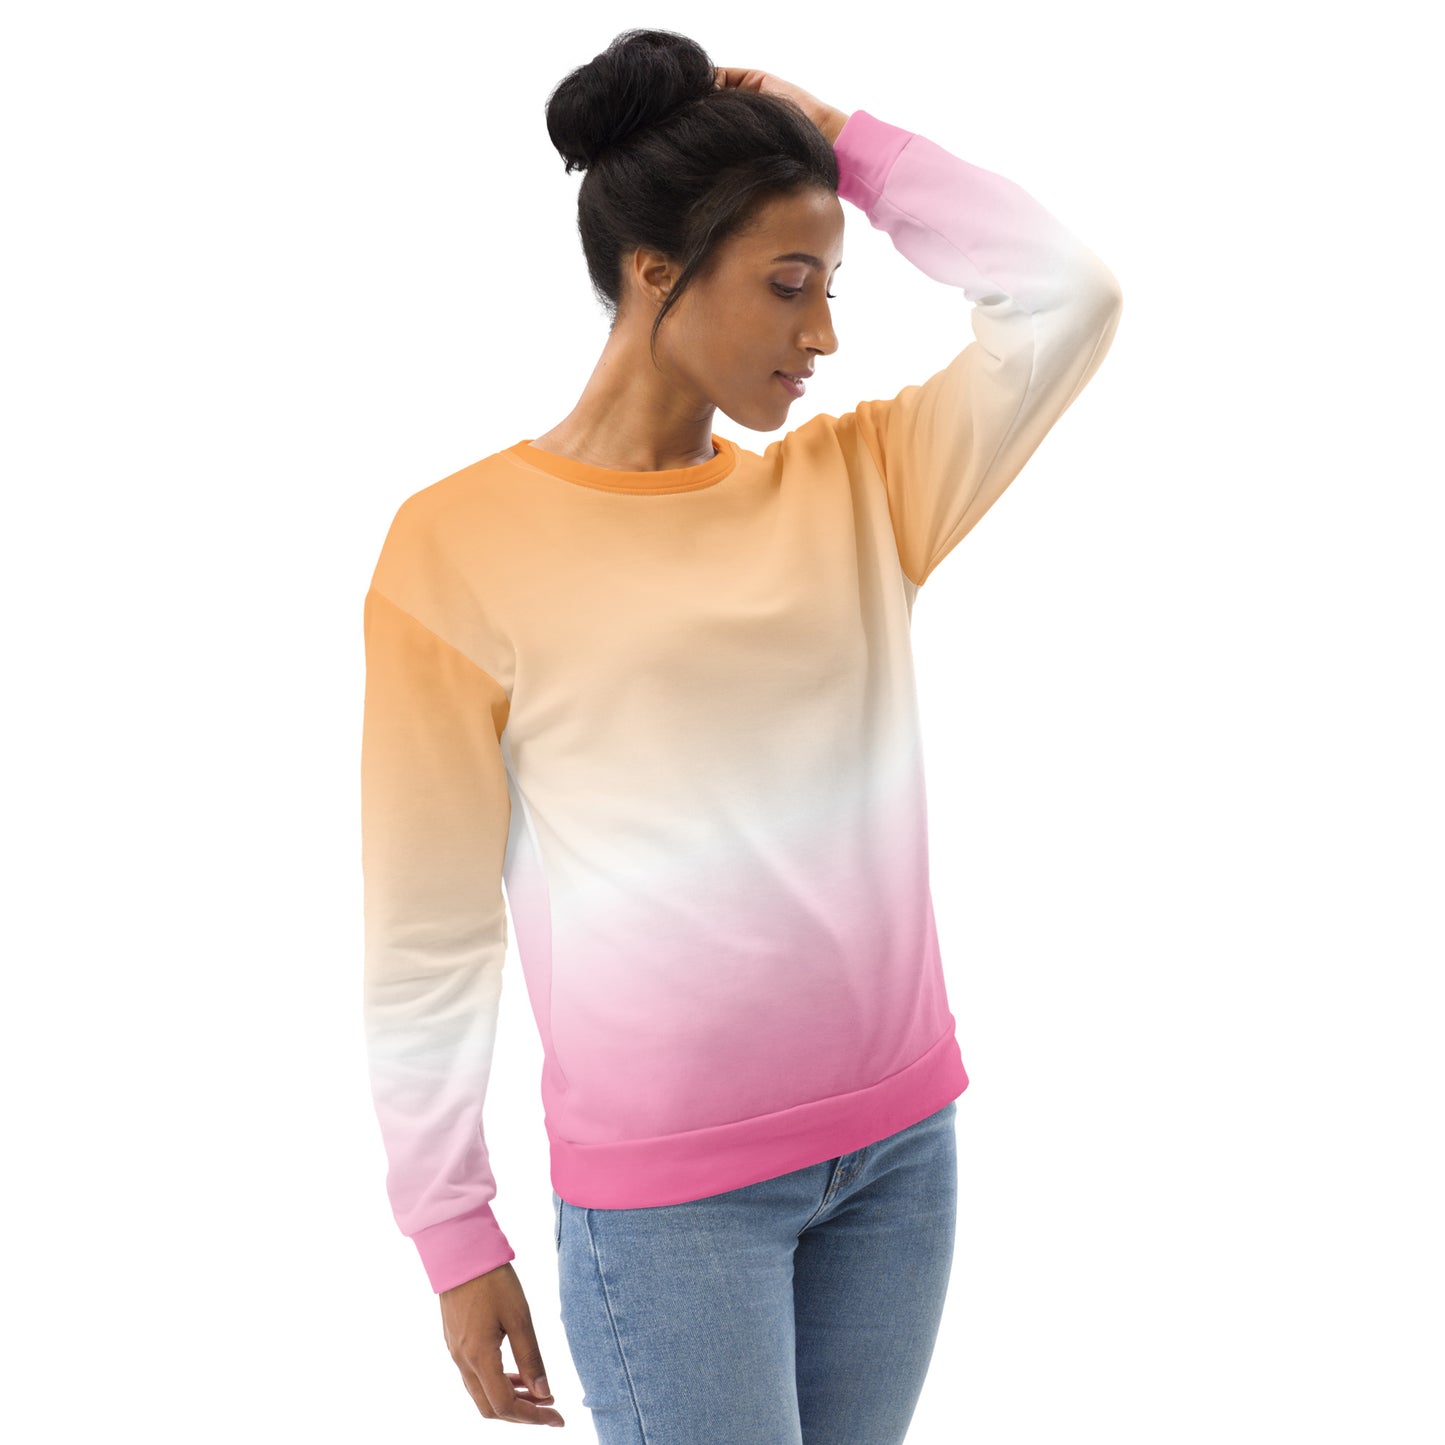 Orange and Pink Ombre Sweatshirt